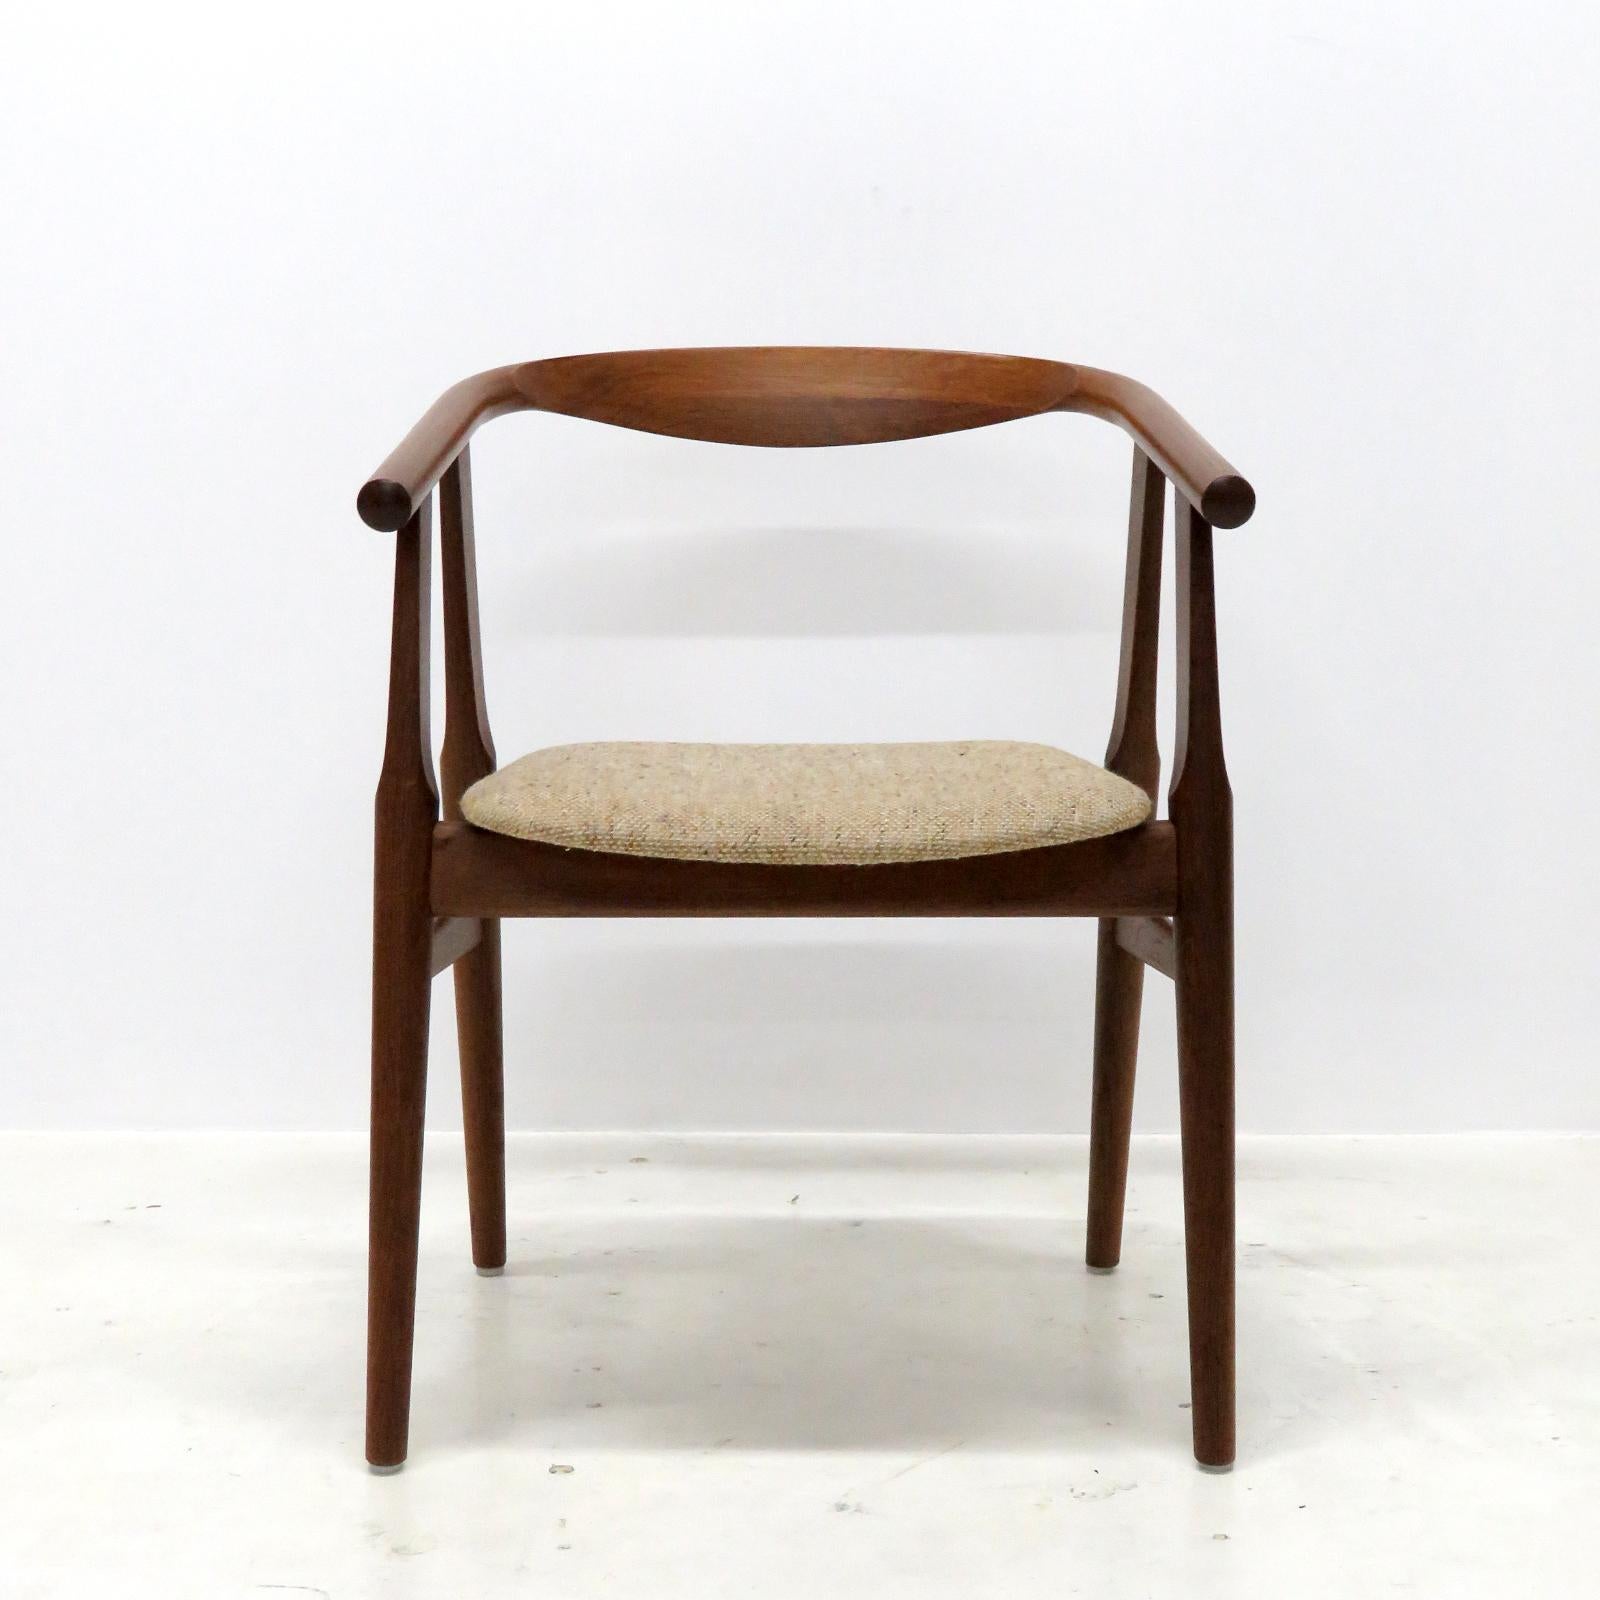 Merveilleux ensemble de six chaises de salle à manger, modèle GE525, conçu par Hans J. Wegner et fabriqué par GETAMA dans les années 1960, en chêne fumé et rembourrage en laine mouchetée de couleur claire, marqué, listé comme un ensemble de 6.